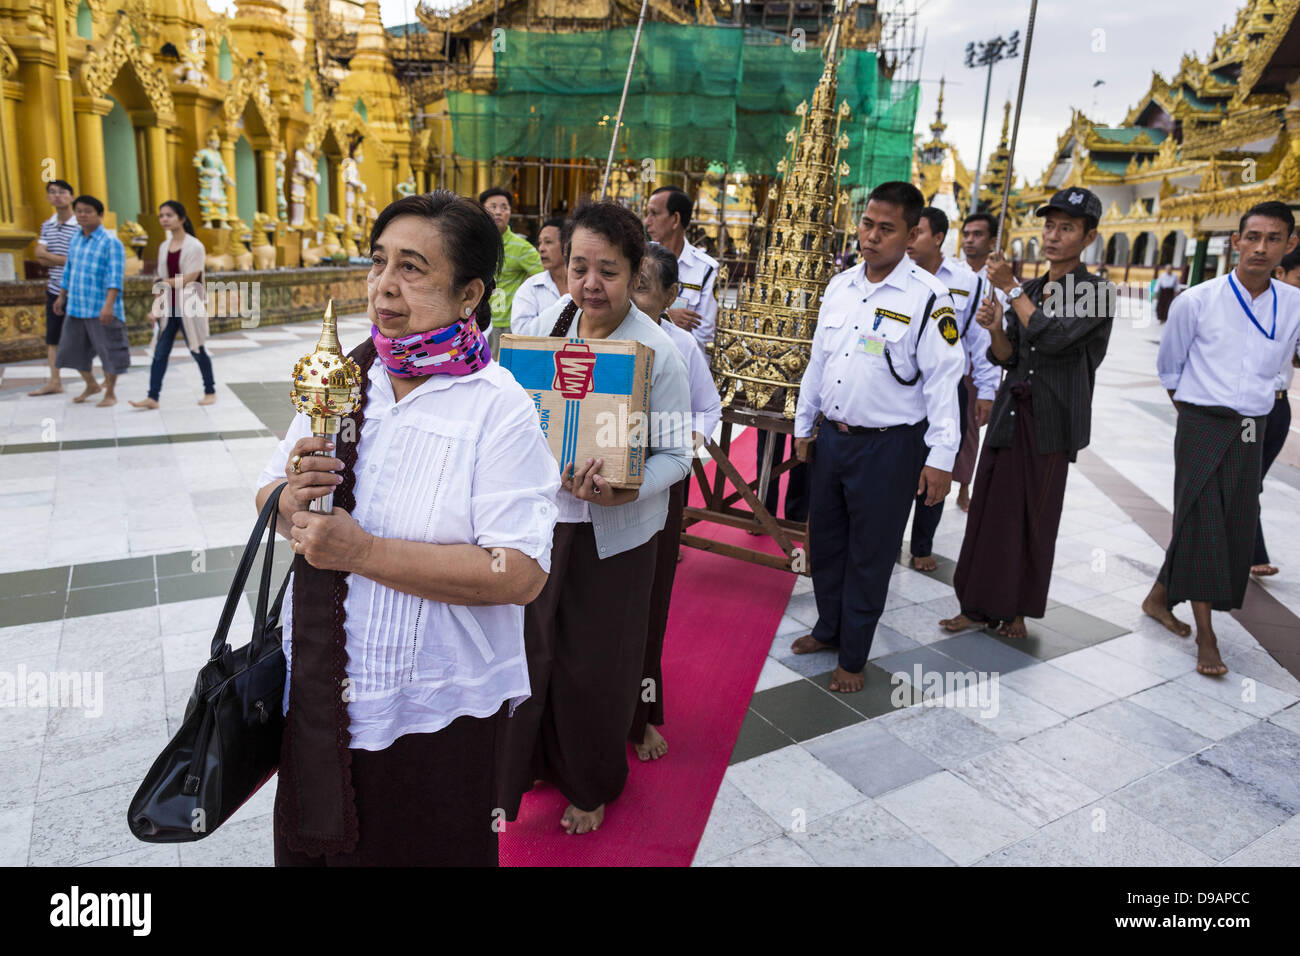 Giugno 15, 2013 - Yangon, Unione di Myanmar - Una donna conduce una famiglia il merito rendendo processione attorno Shwedagon pagoda in Yangon. La Shwedagon pagoda è ufficialmente conosciuta come Shwedagon Zedi Daw ed è anche chiamato la Grande Pagoda di Dagon o la pagoda dorata. Si tratta di un 99 metri (325Â ft) tall pagoda e stupa si trova a Yangon, Birmania. La pagoda si trova ad ovest di Singuttara sulla collina e domina lo skyline della città. È il più sacro pagoda buddista in Myanmar e contiene le reliquie del passato quattro Buddha sancito: il personale di Kakusandha, il filtro dell'acqua di Koá¹‡Ägamana, un pezzo del Foto Stock